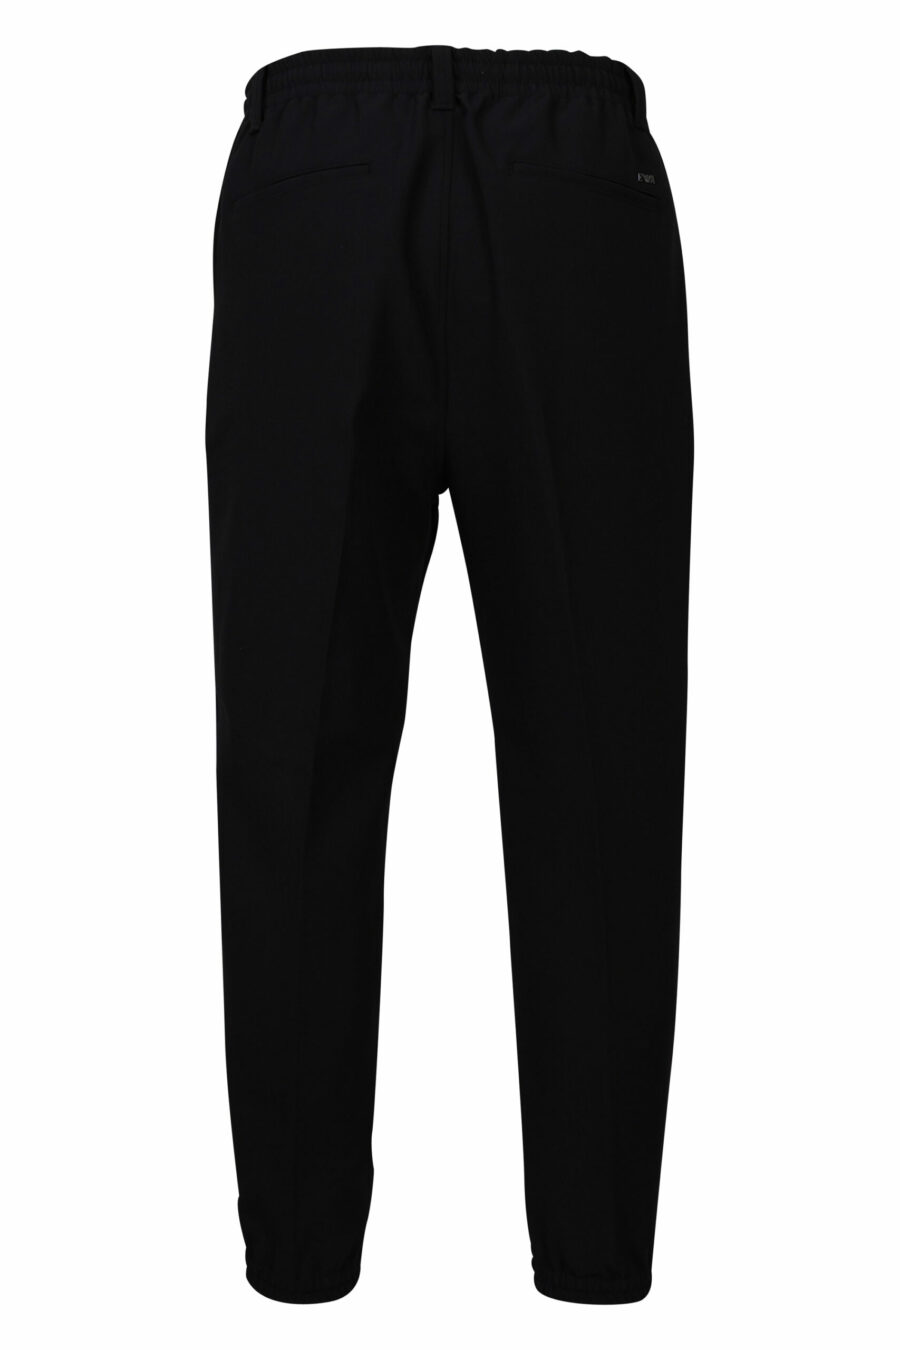 Pantalon noir avec mini-logo - 8057767410278 2 échelles